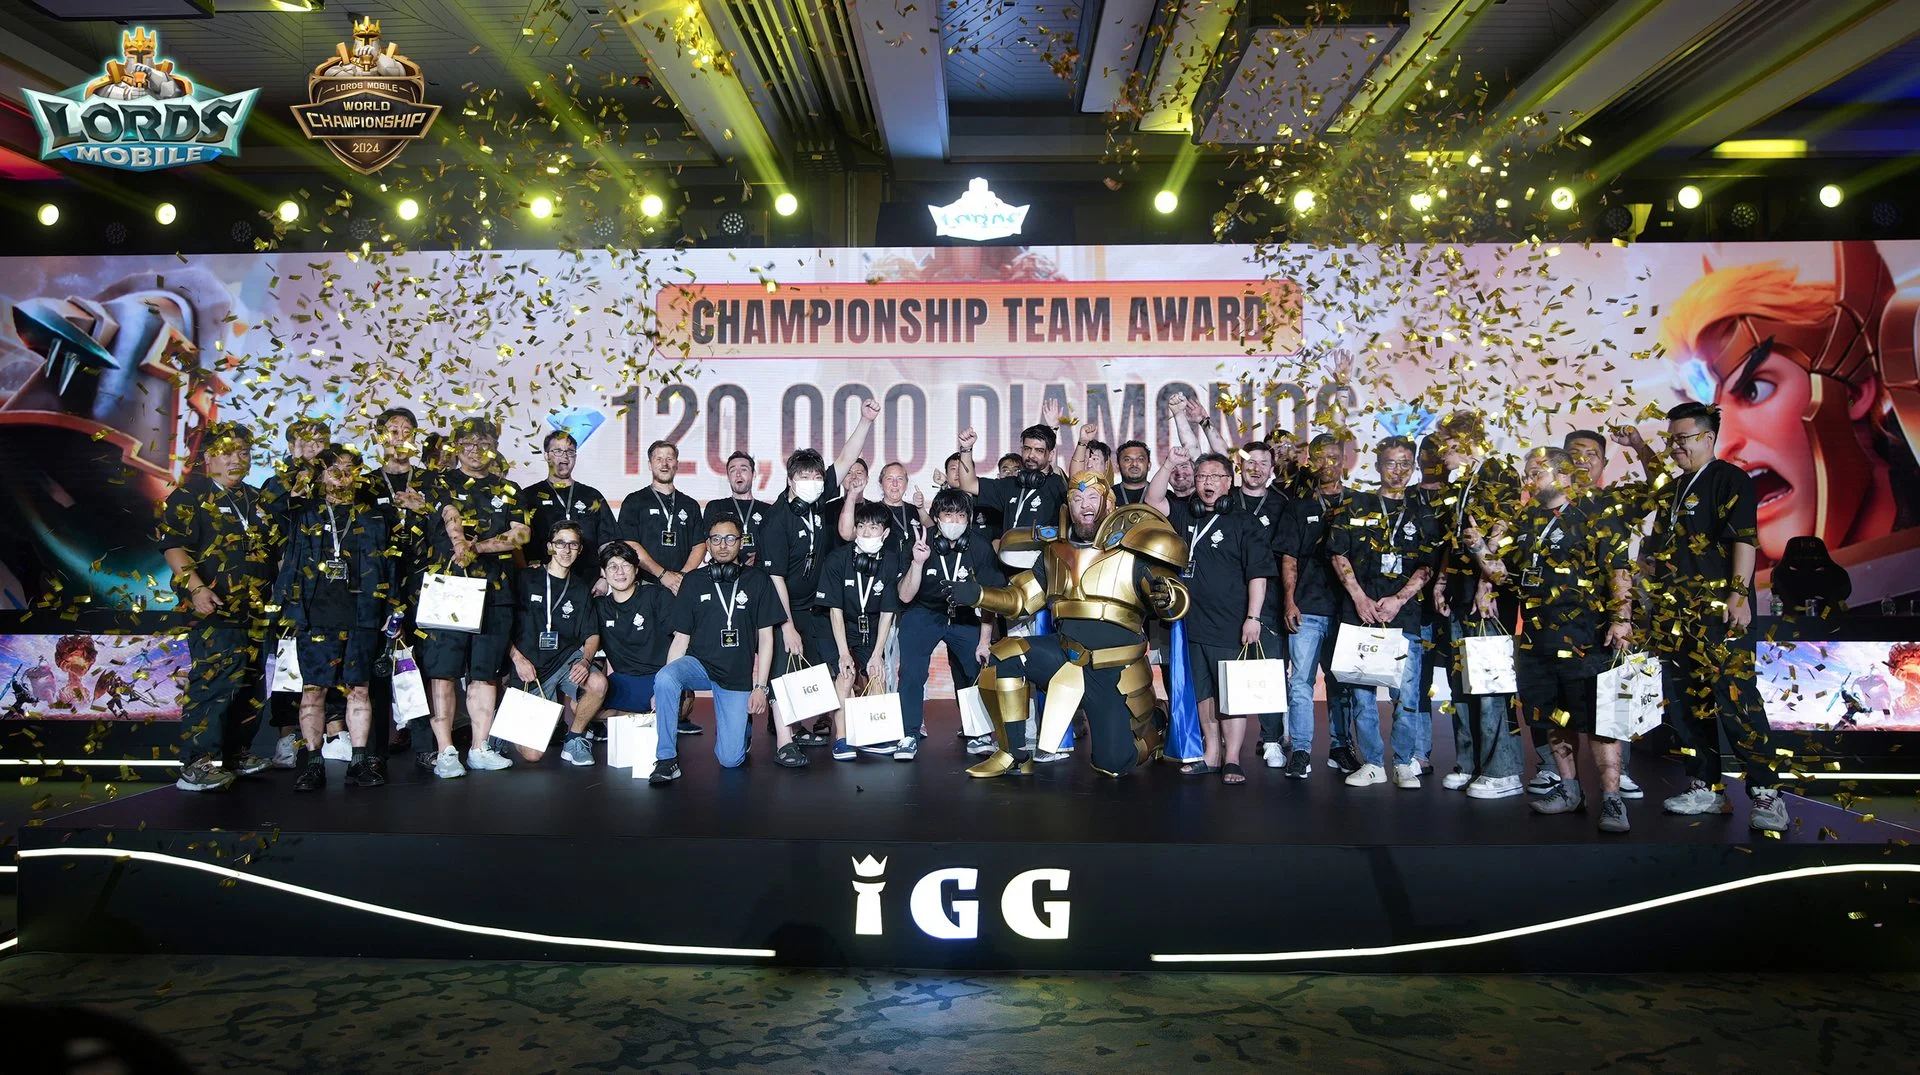 Компания IGG провела первый международный офлайн-чемпионат по SLG. Его посетил Хафтор Бьёрнссон - фото 3